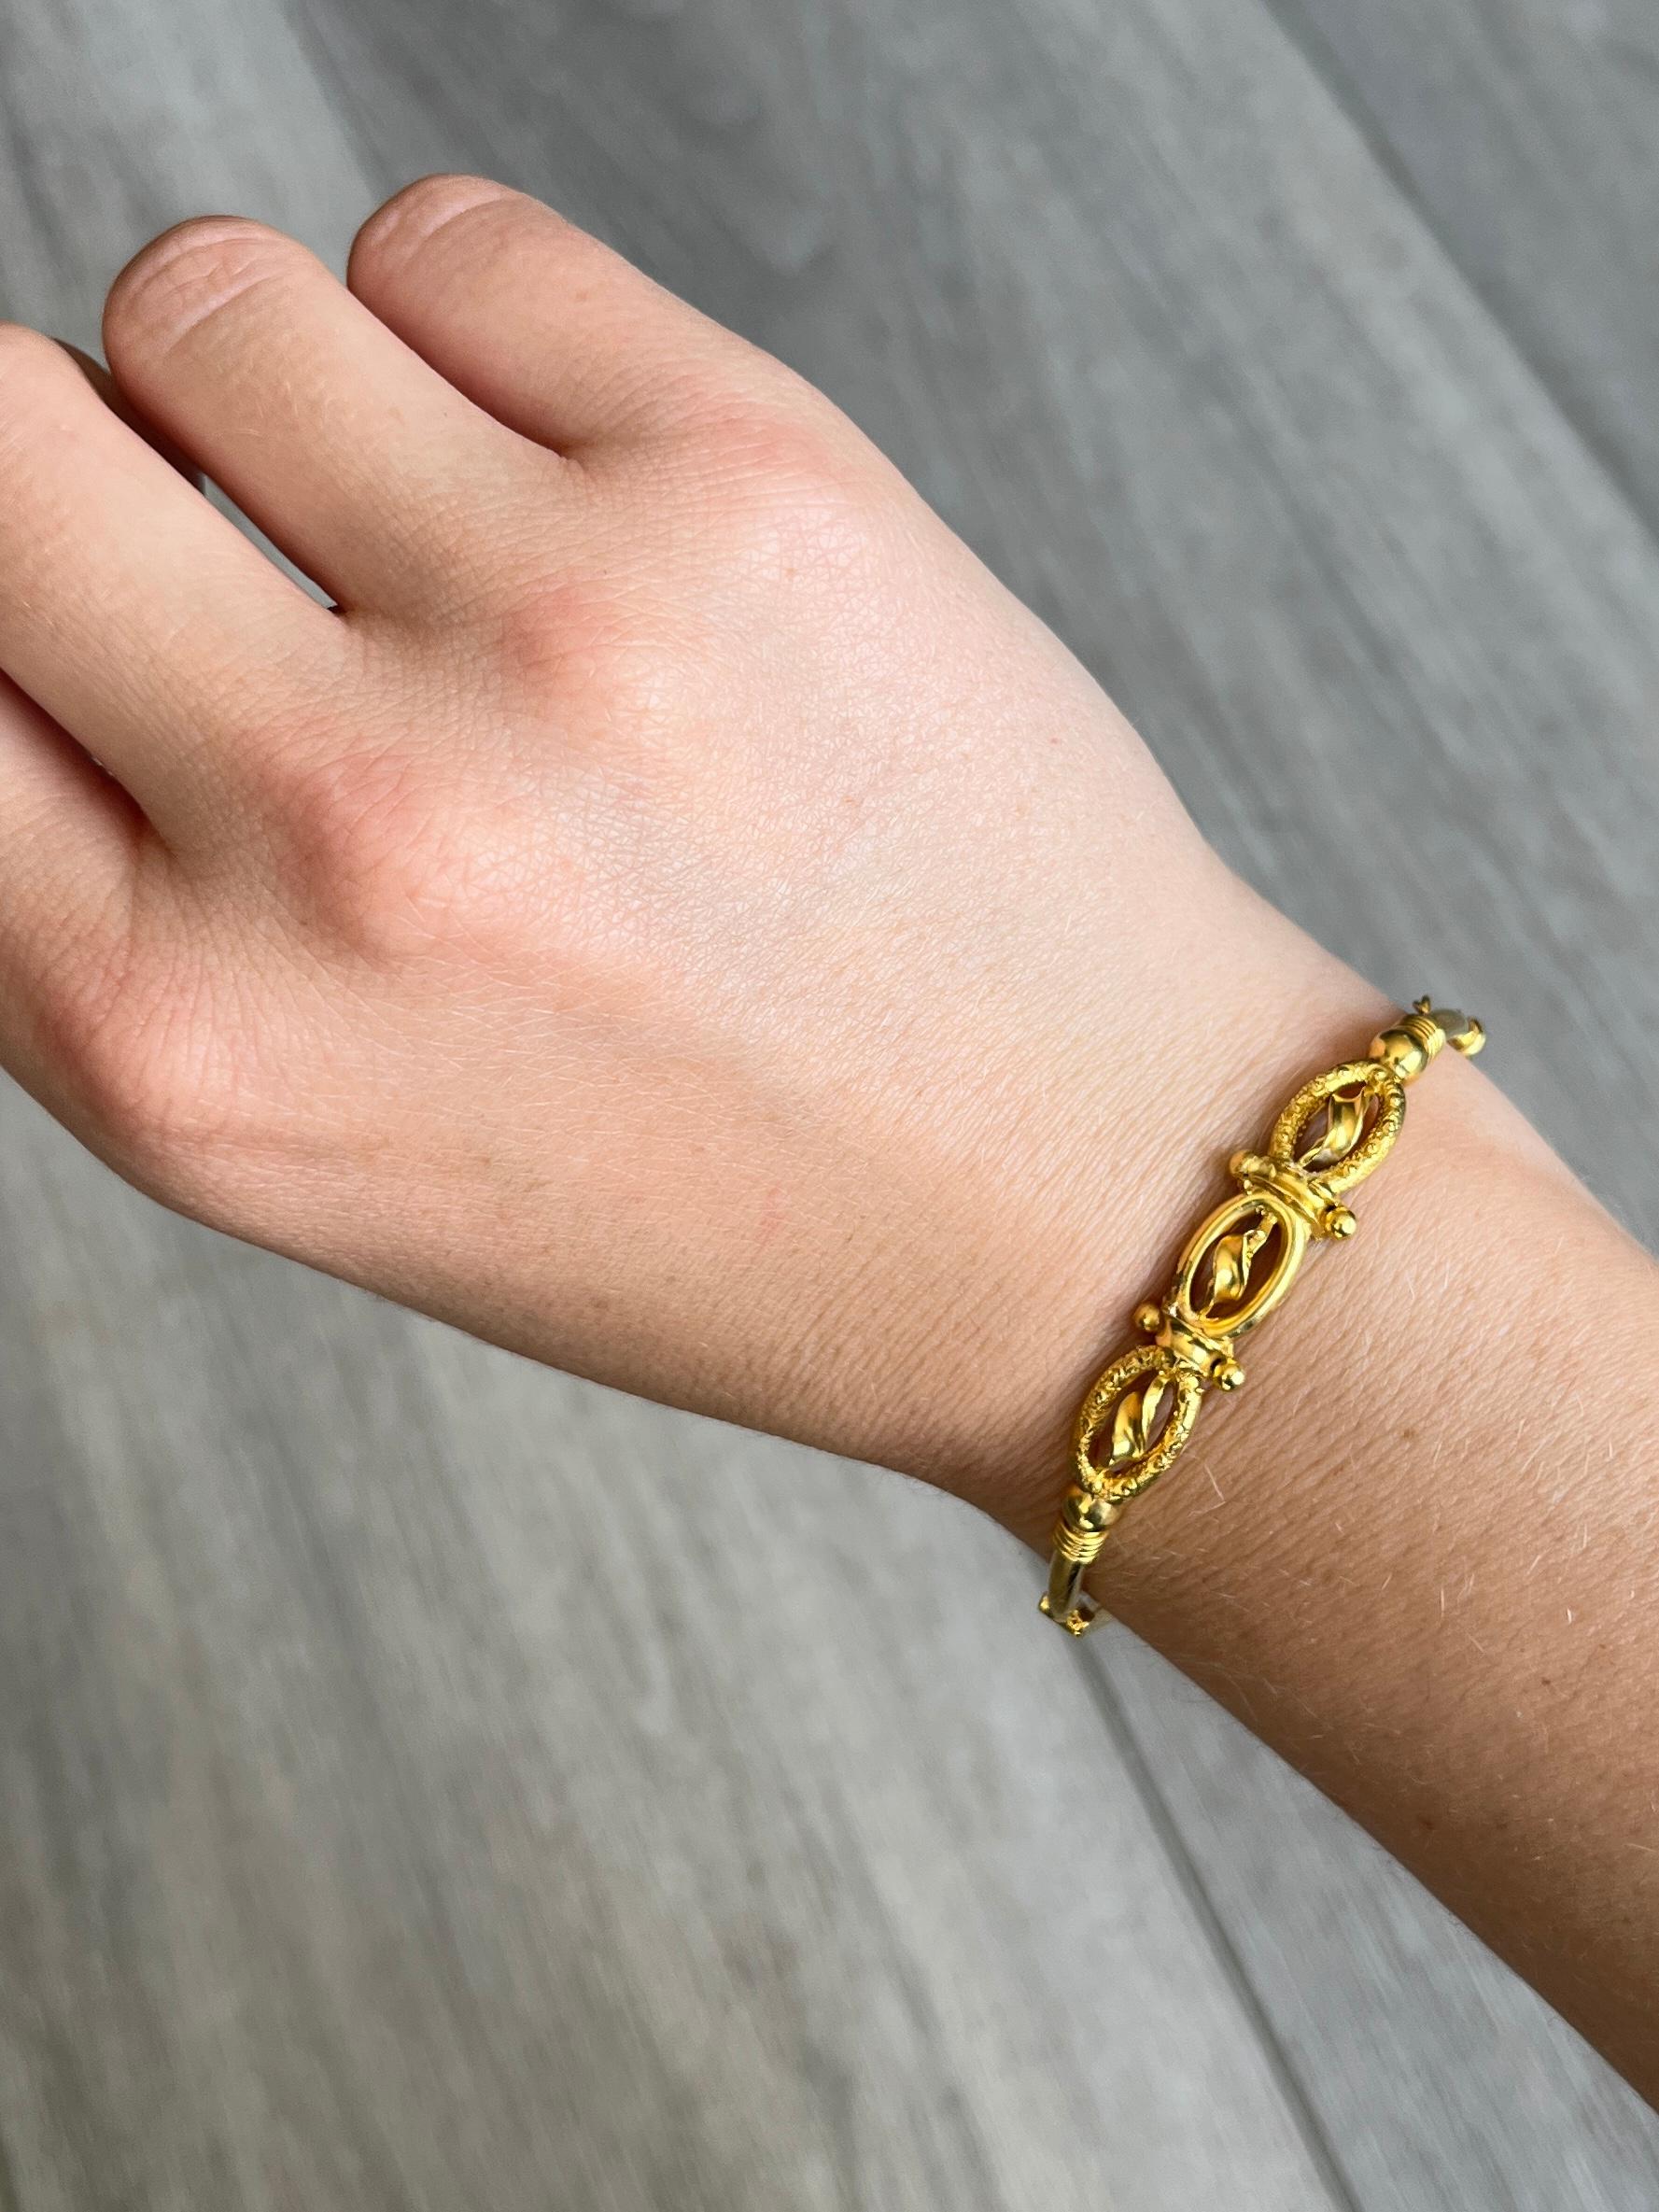 Ce magnifique bracelet en or 9 carats présente des détails délicats. L'or est brillant et lisse. Le bracelet s'ouvre avec une fermeture de bracelet classique et possède une chaîne de sécurité.

Diamètre intérieur : 54 mm 

Poids : 5.6g